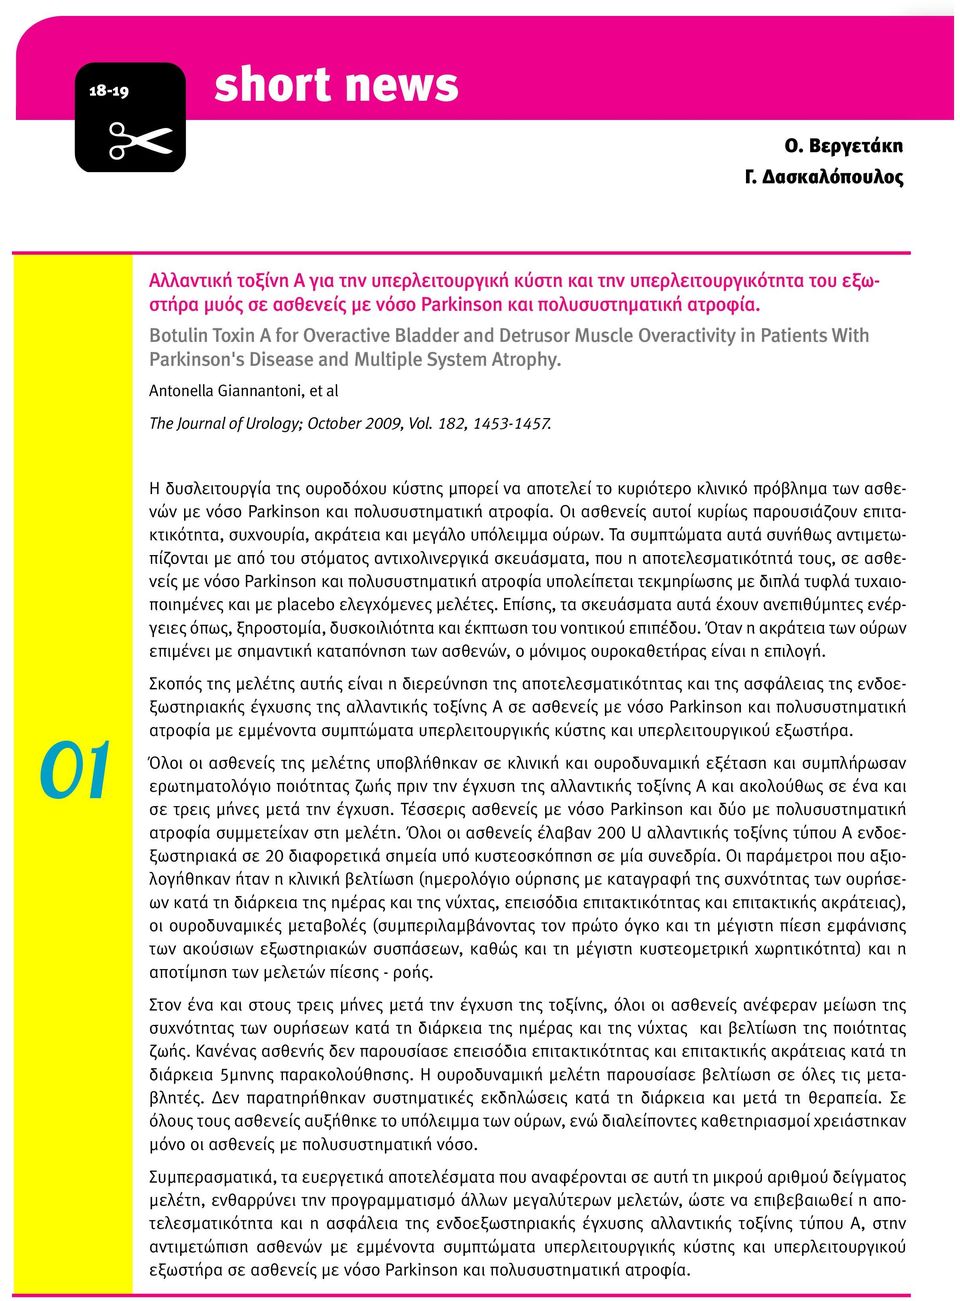 Antonella Giannantoni, et al The Journal of Urology; October 2009, Vol. 182, 1453-1457.